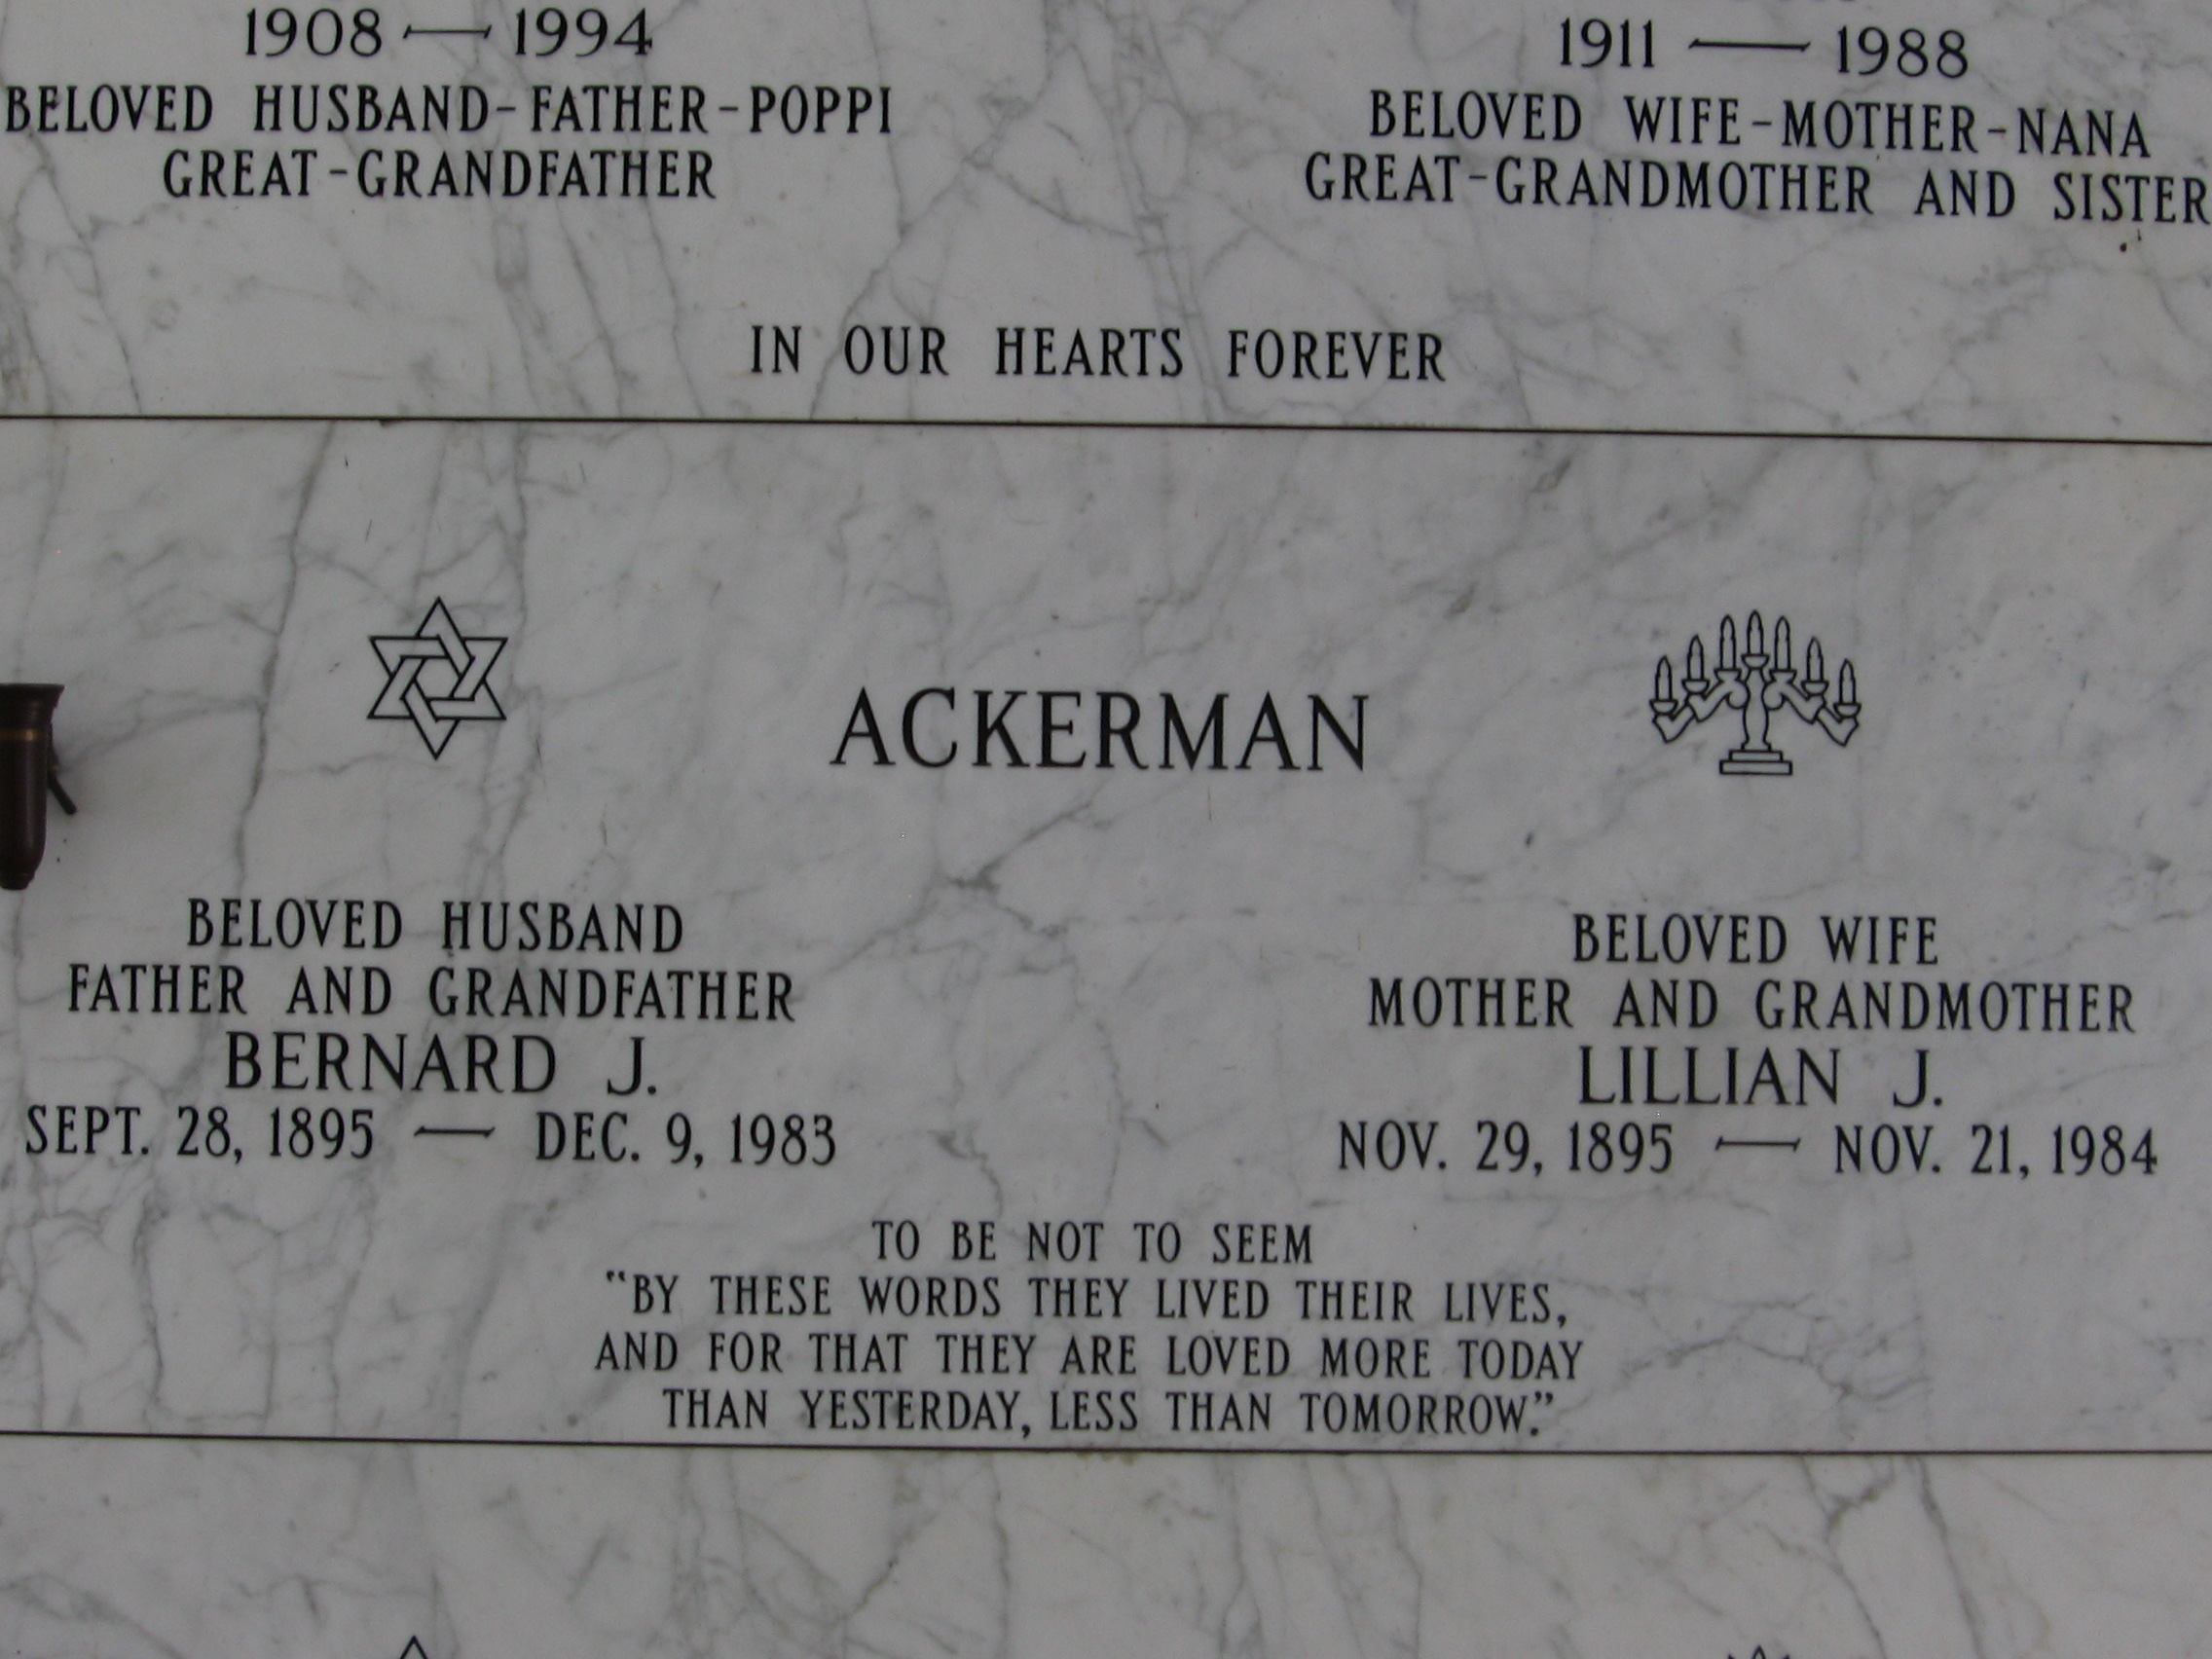 Bernard J Ackerman